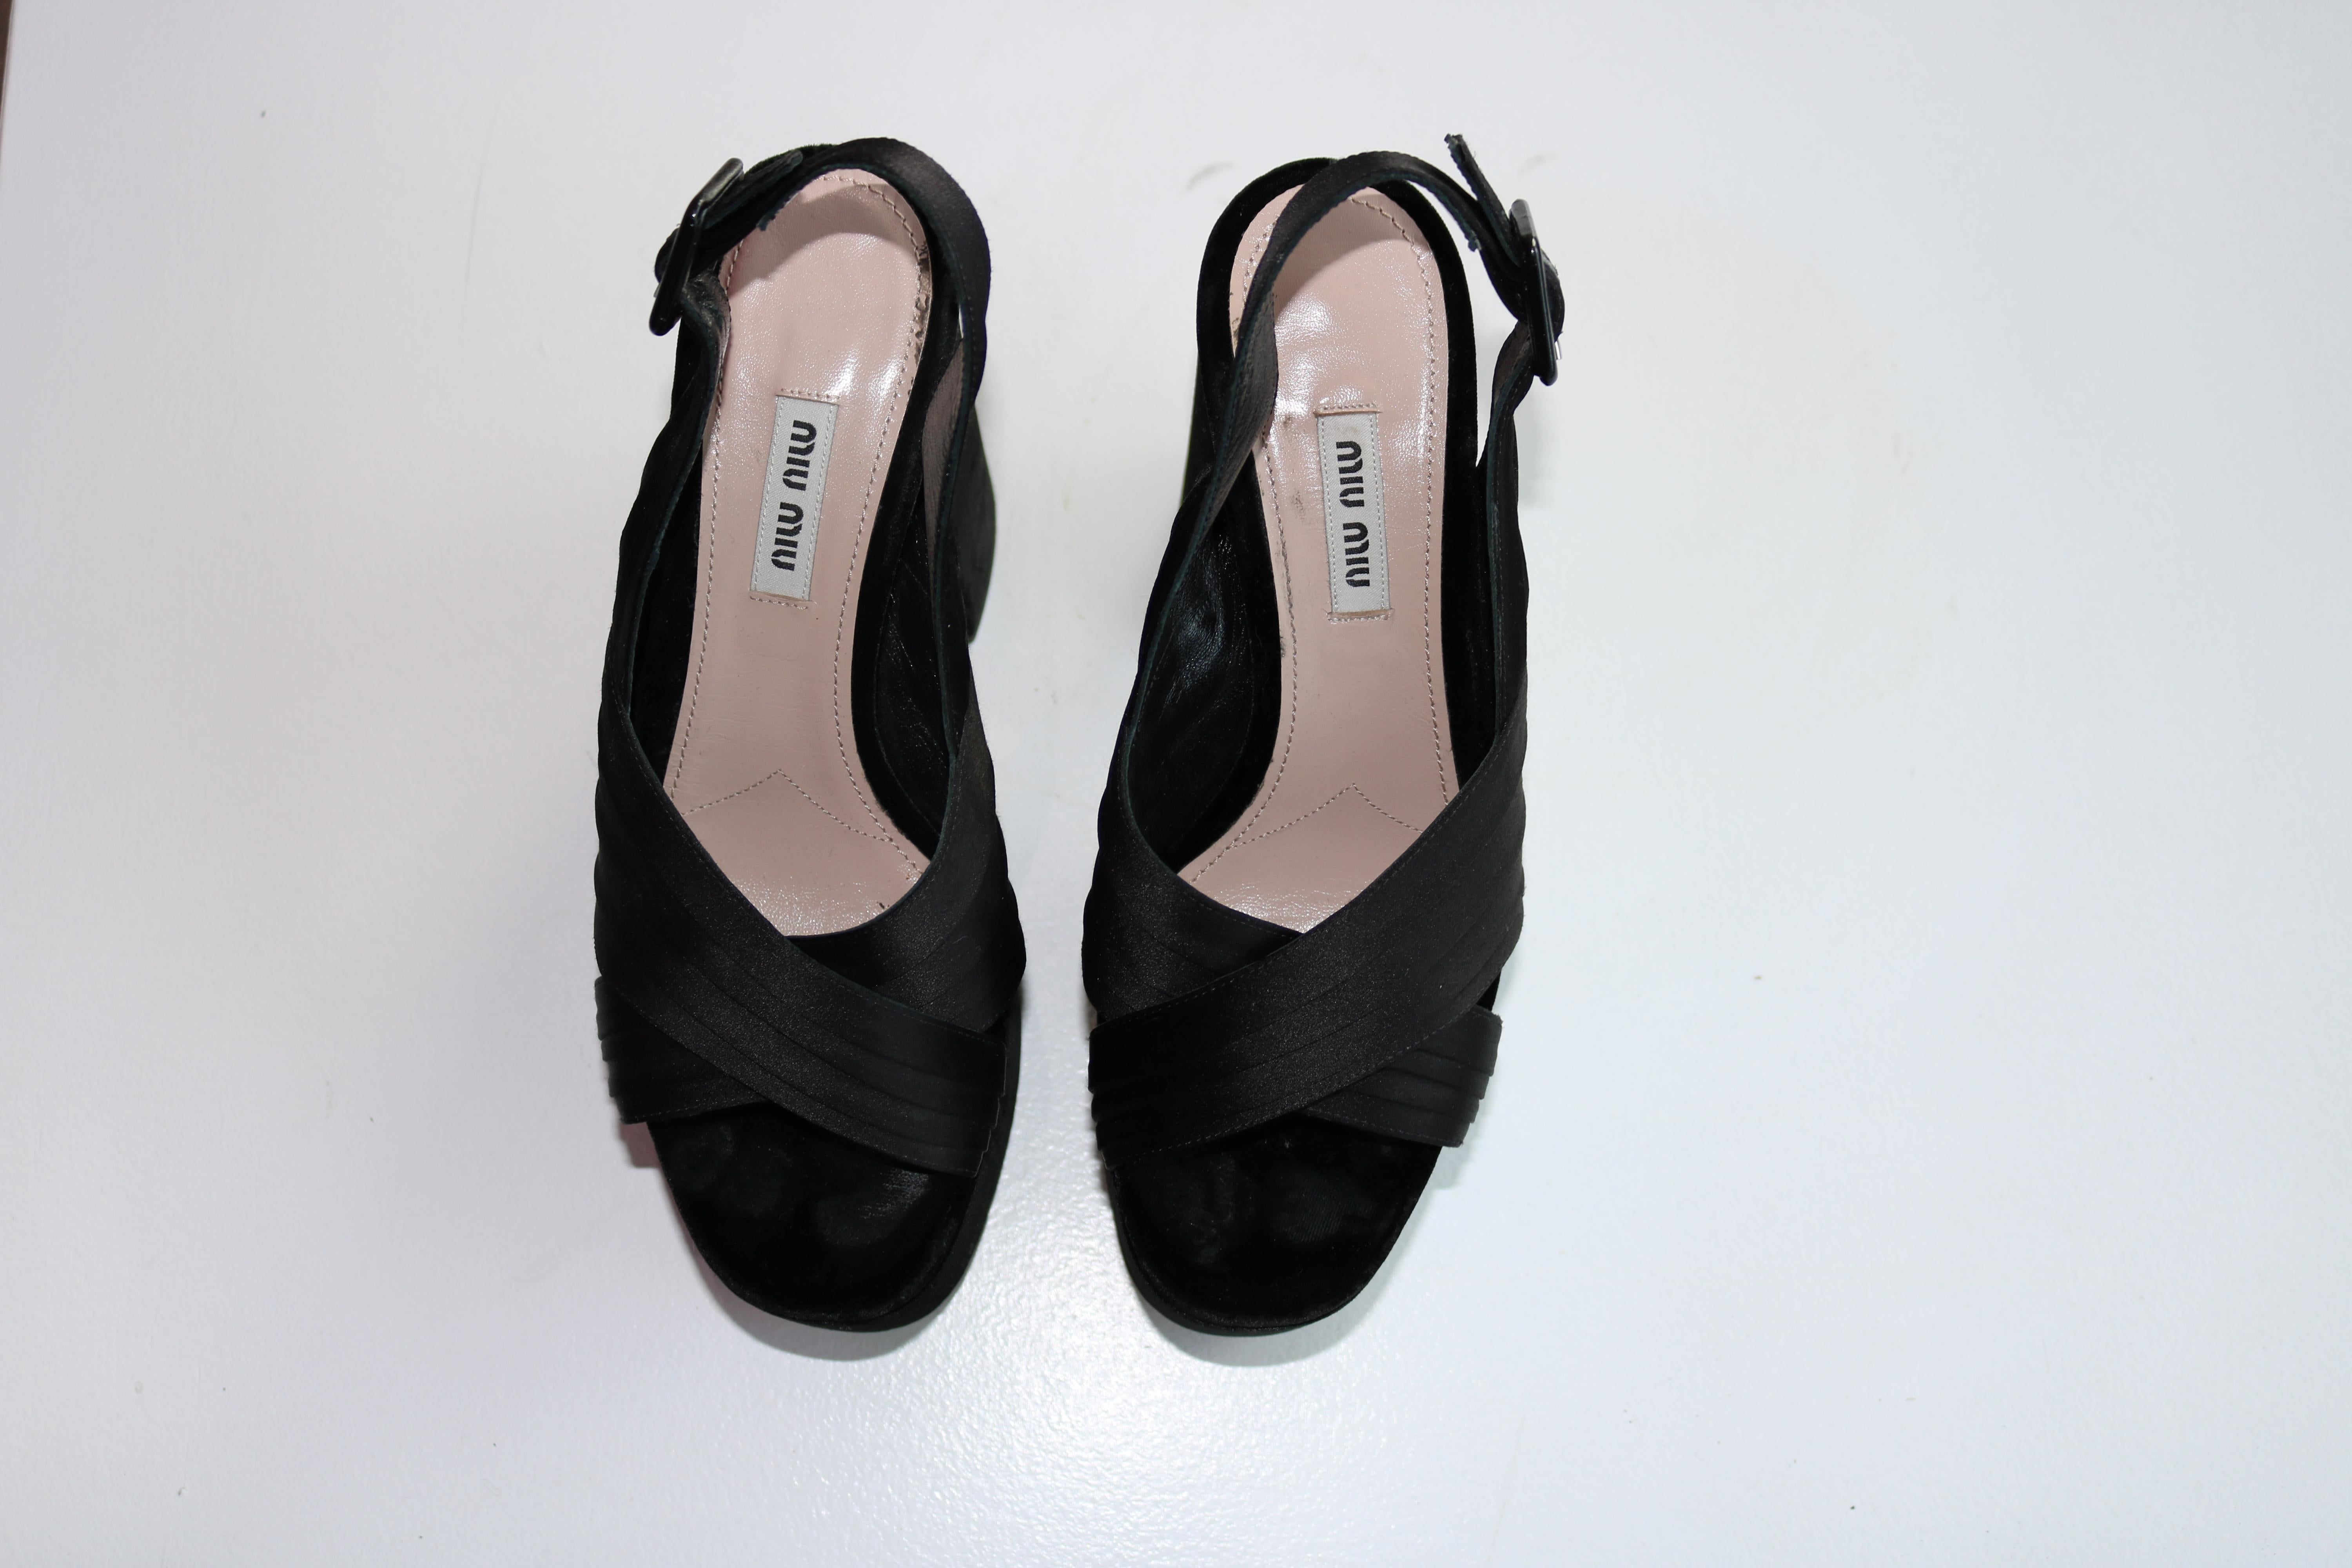 Miu Miu satin sandal with velvet trim.
5